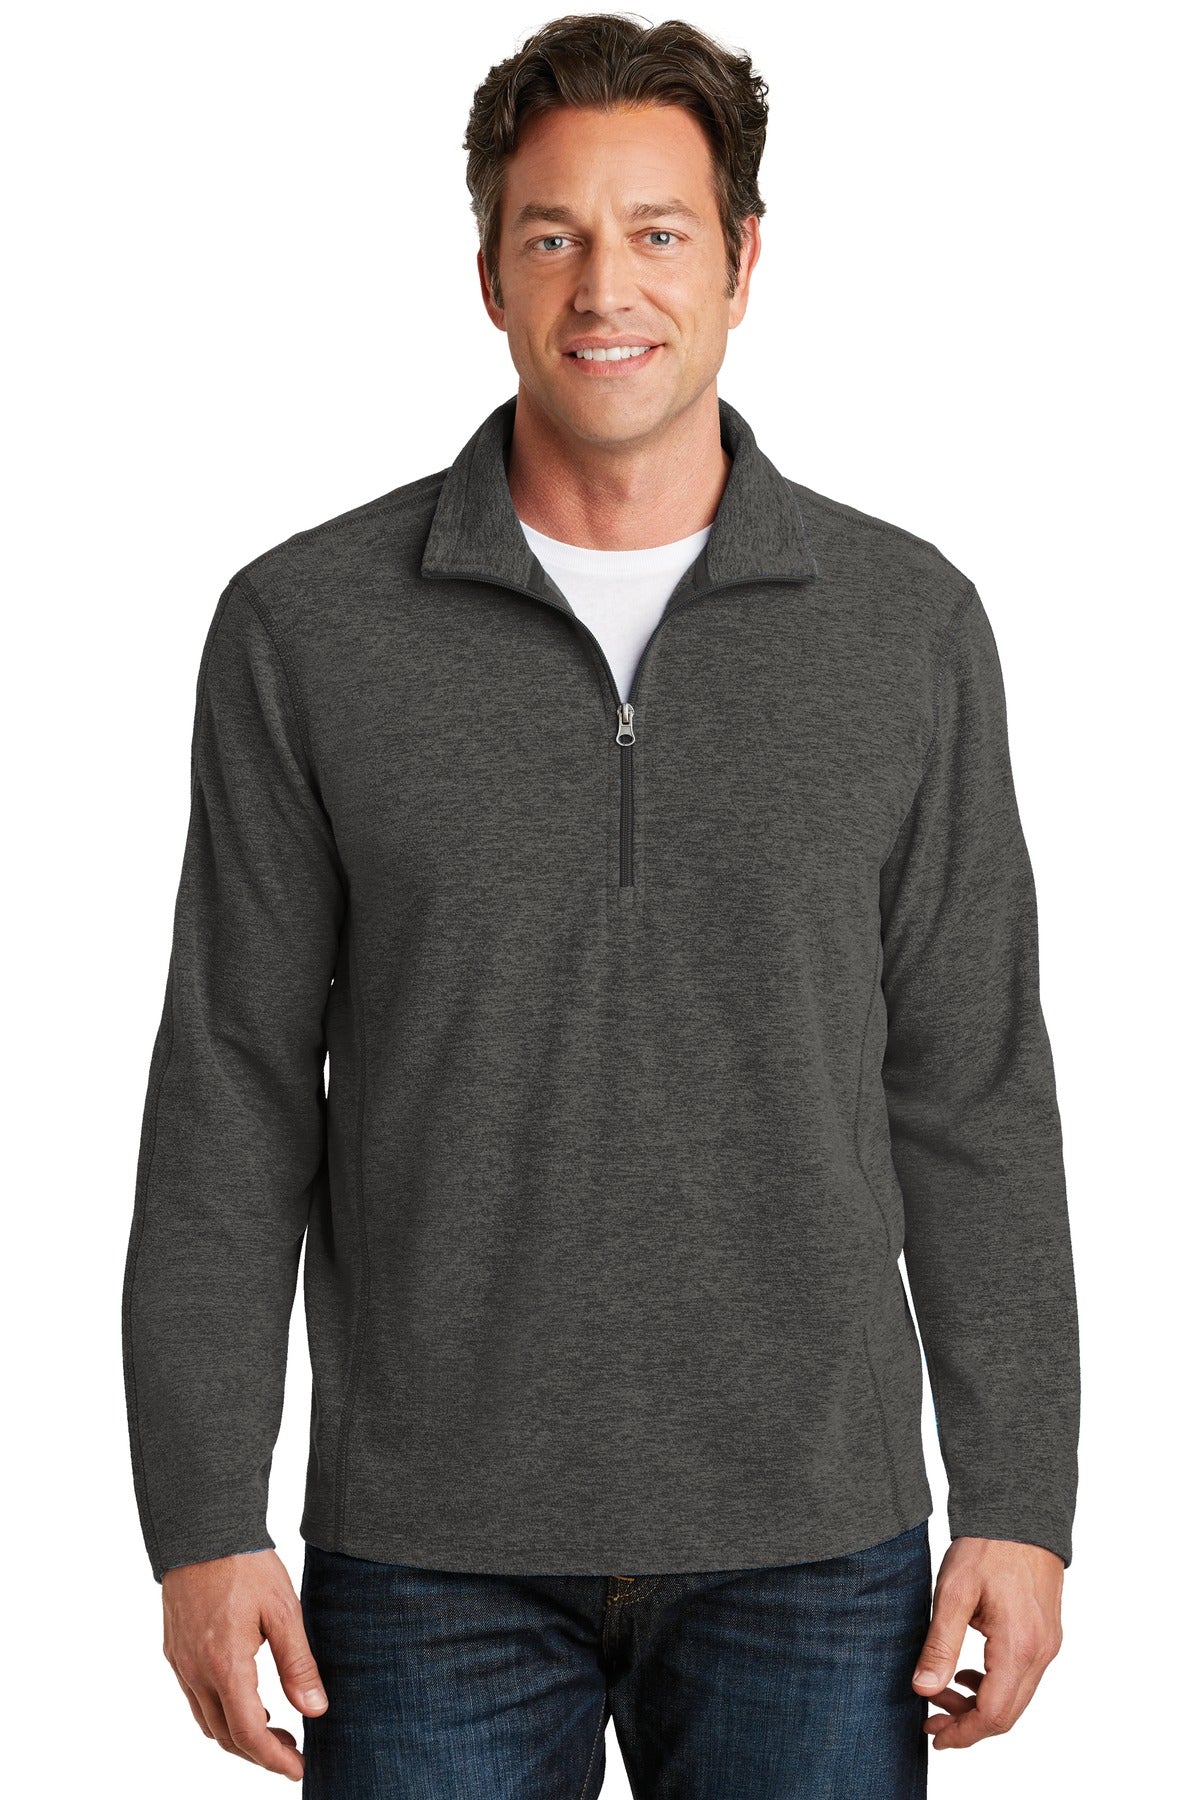 Sweatshirts/Fleece Black Charcoal Heather Port Authority